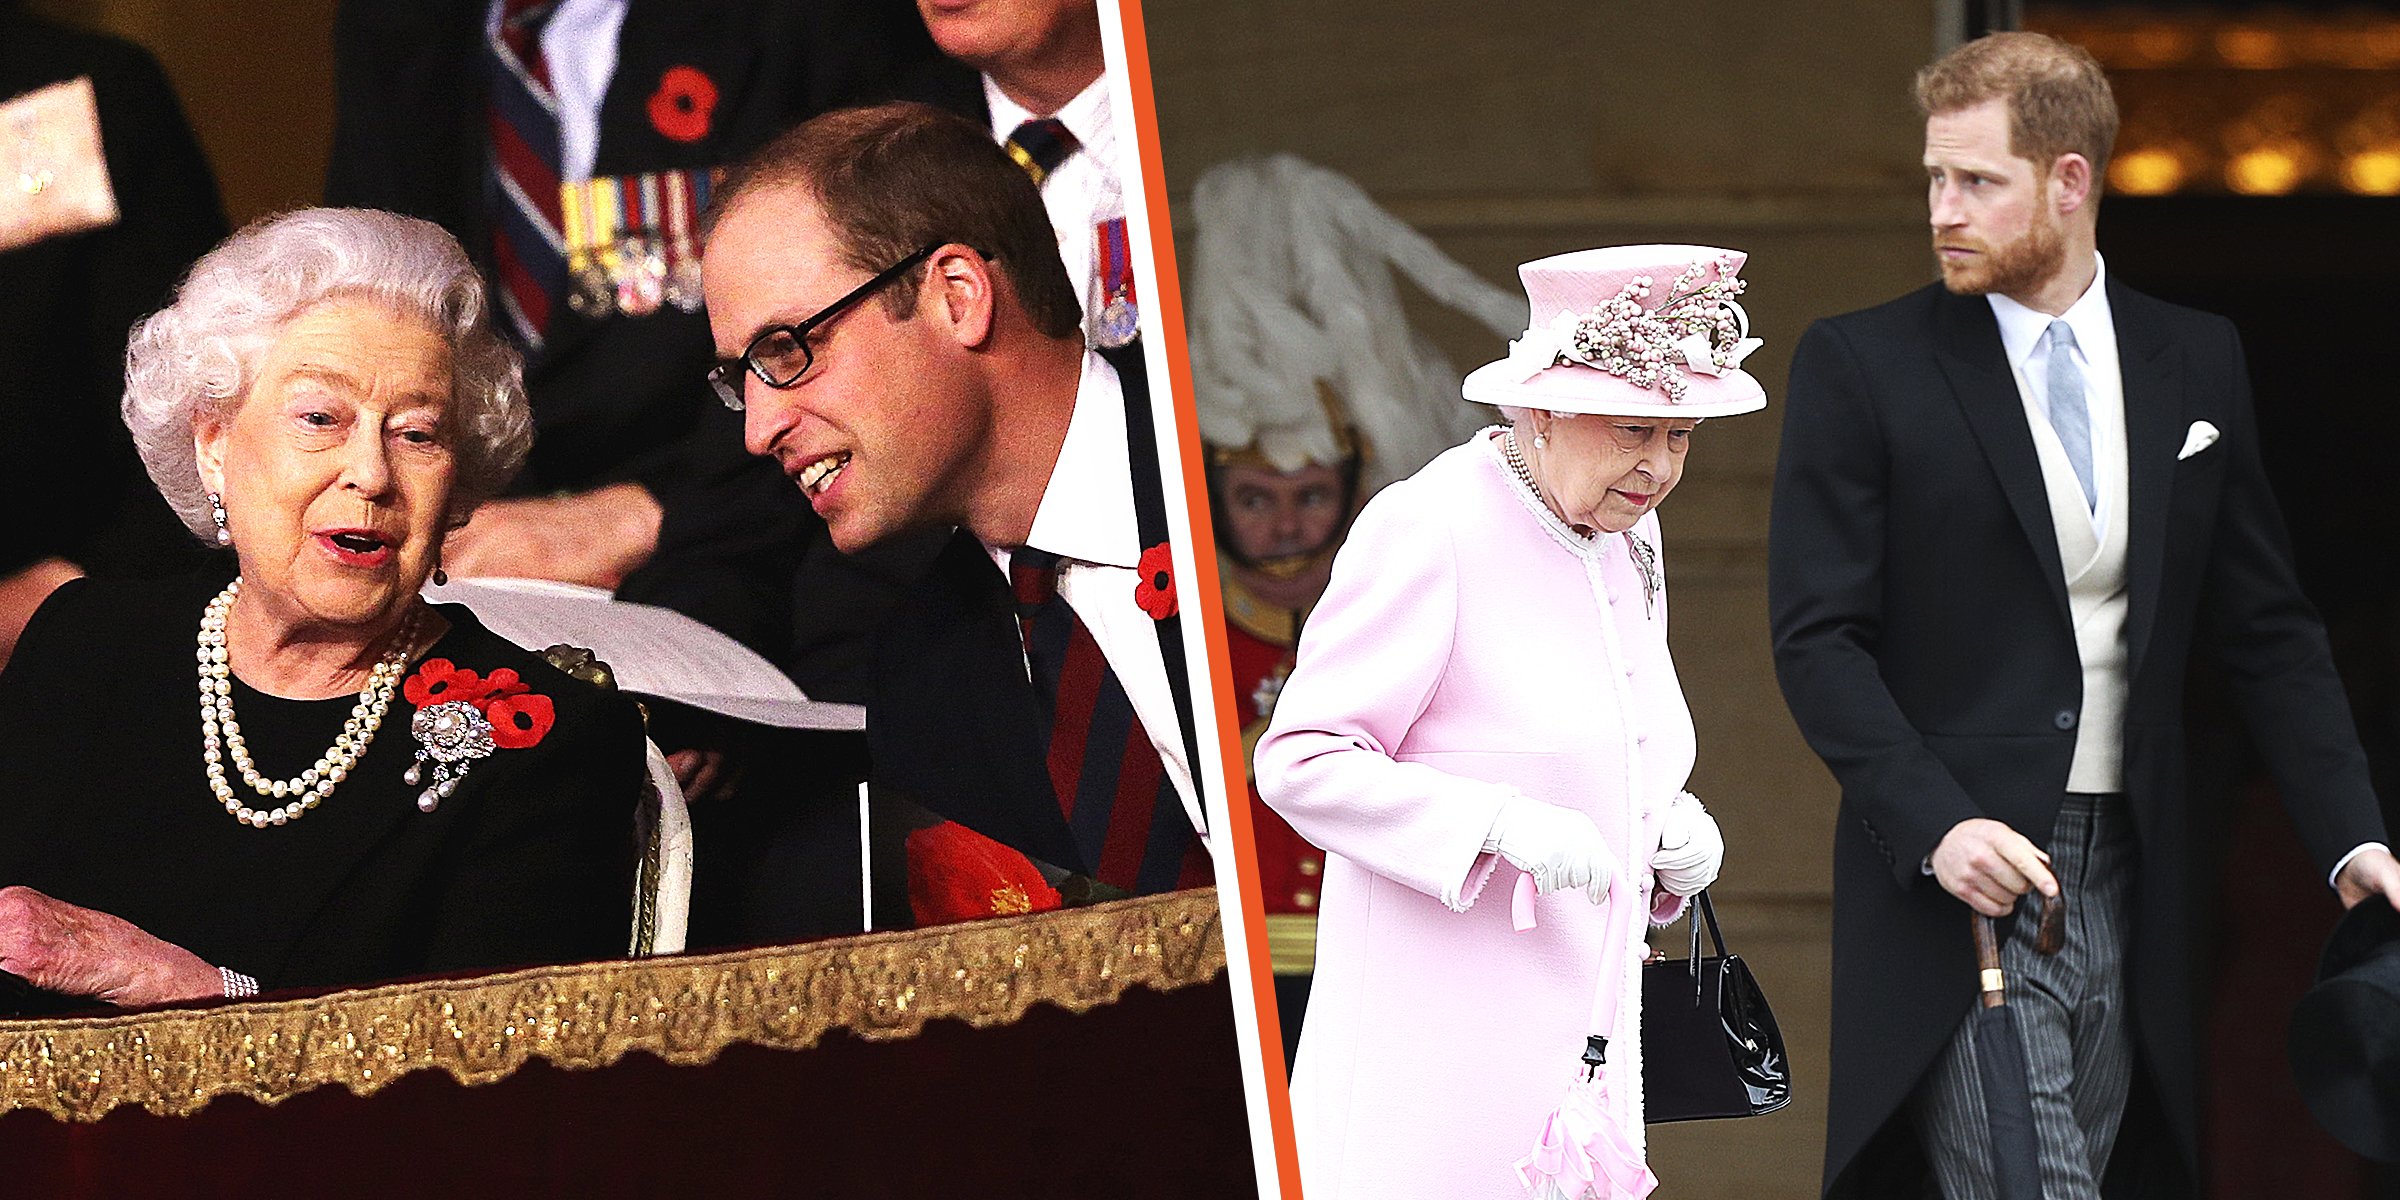 Queen Elizabeth II and Prince William | Queen Elizabeth II and Prince Harry | Source: Getty Images